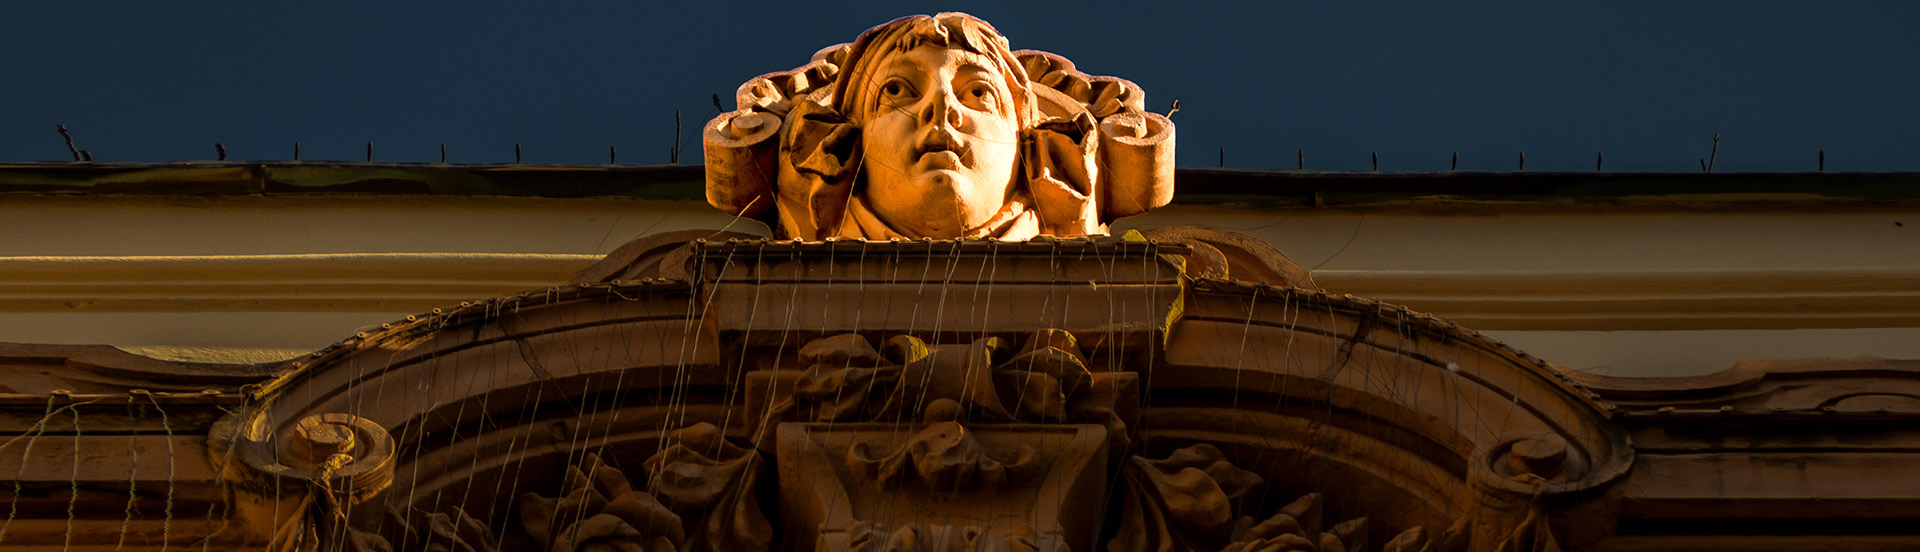 A Pécsi Nemzeti Színház külső homlokazti oldalán surulófényben látható egy szecessziós fej premierplánban